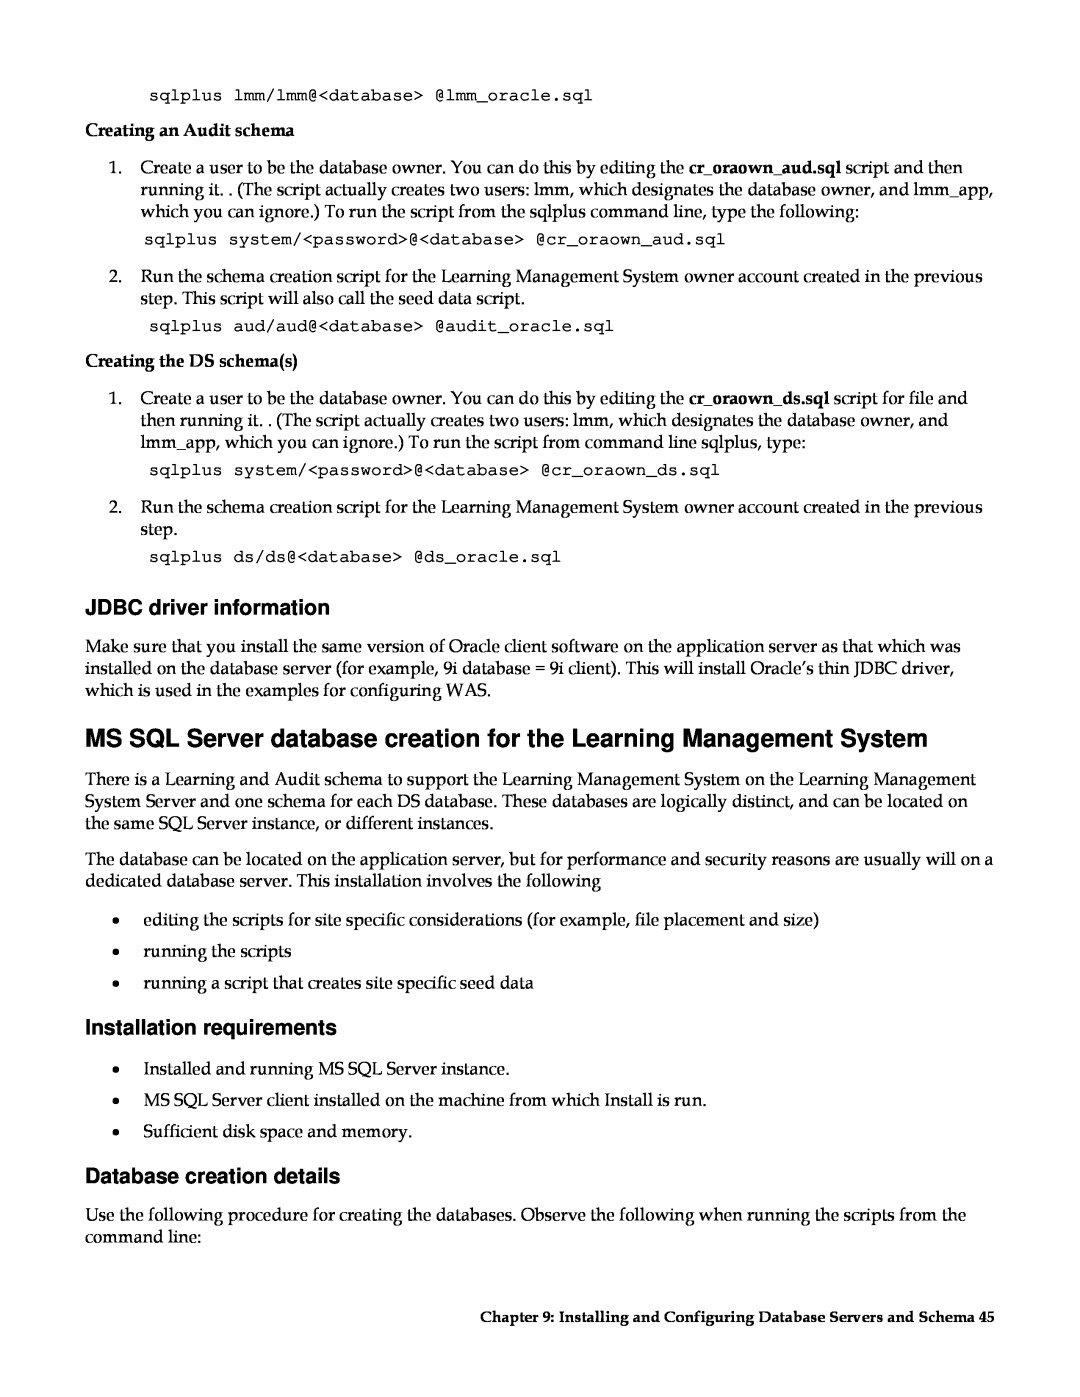 IBM G210-1784-00 manual MS SQL Server database creation for the Learning Management System, JDBC driver information 